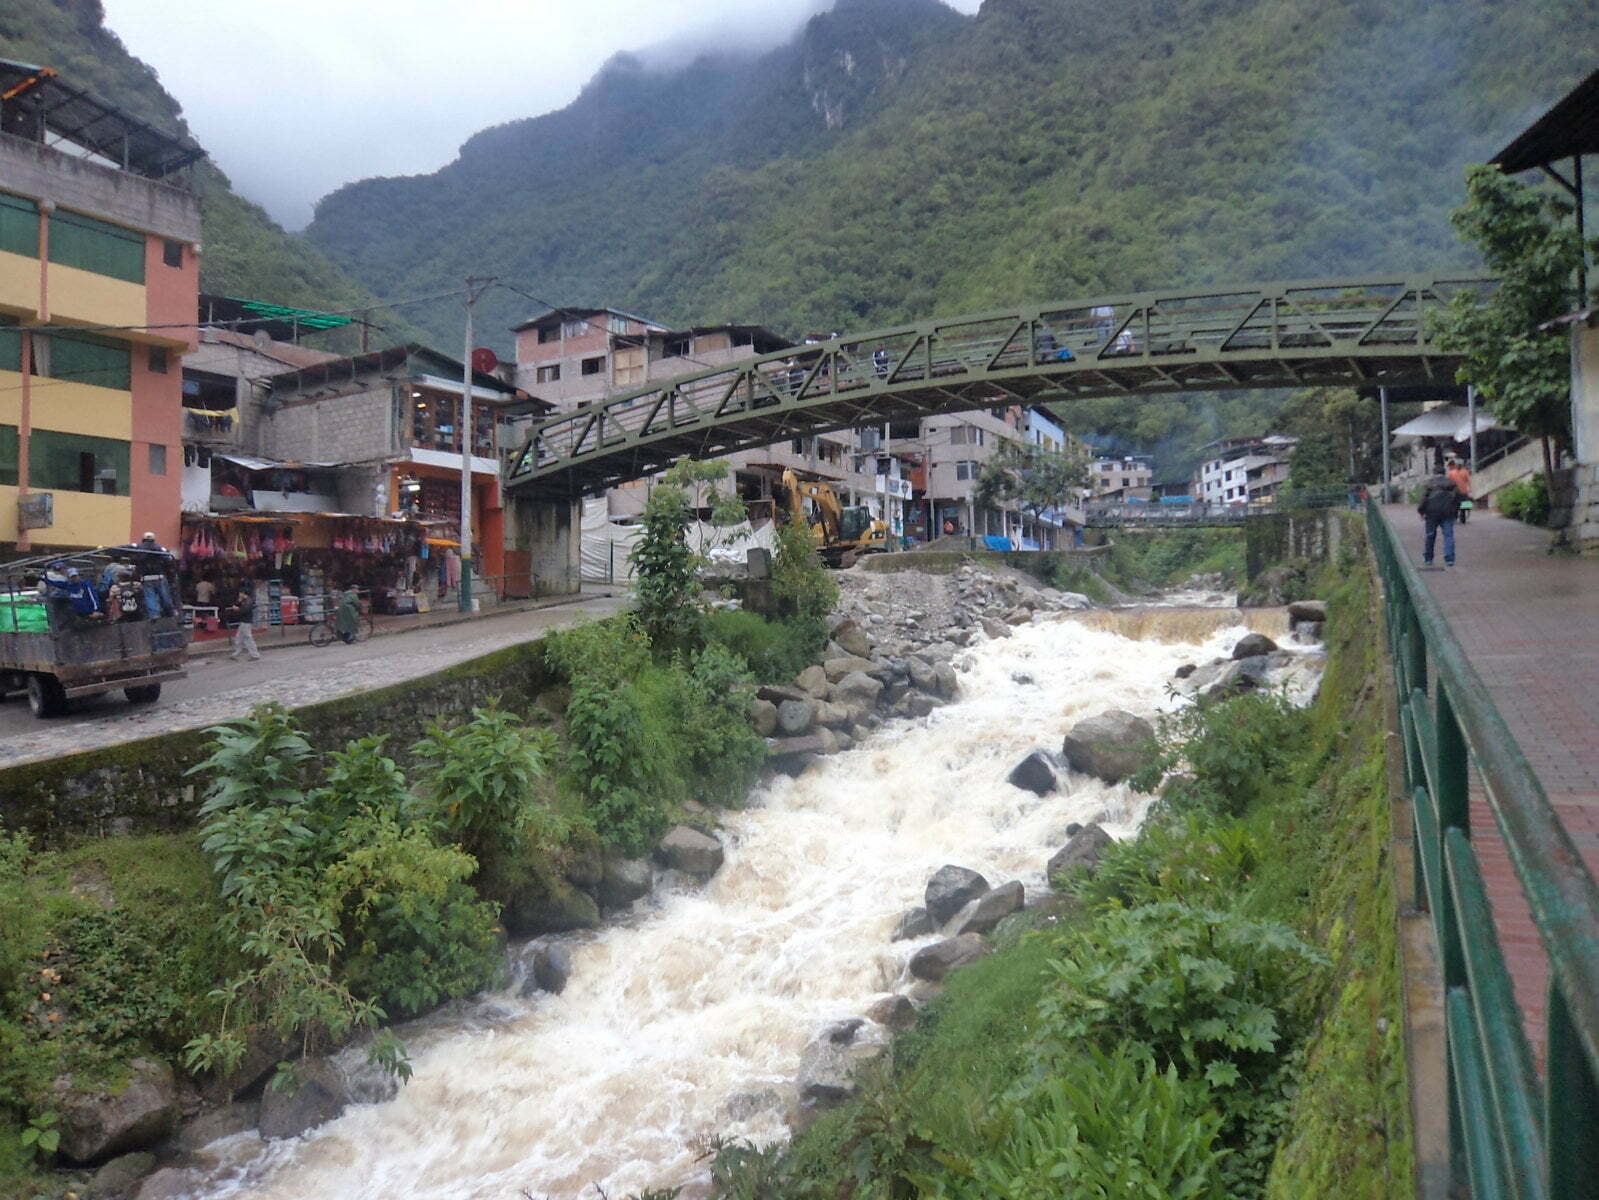 Rio que corta Aguas Calientes, cidade base para chagada a Machu Picchu, Peru